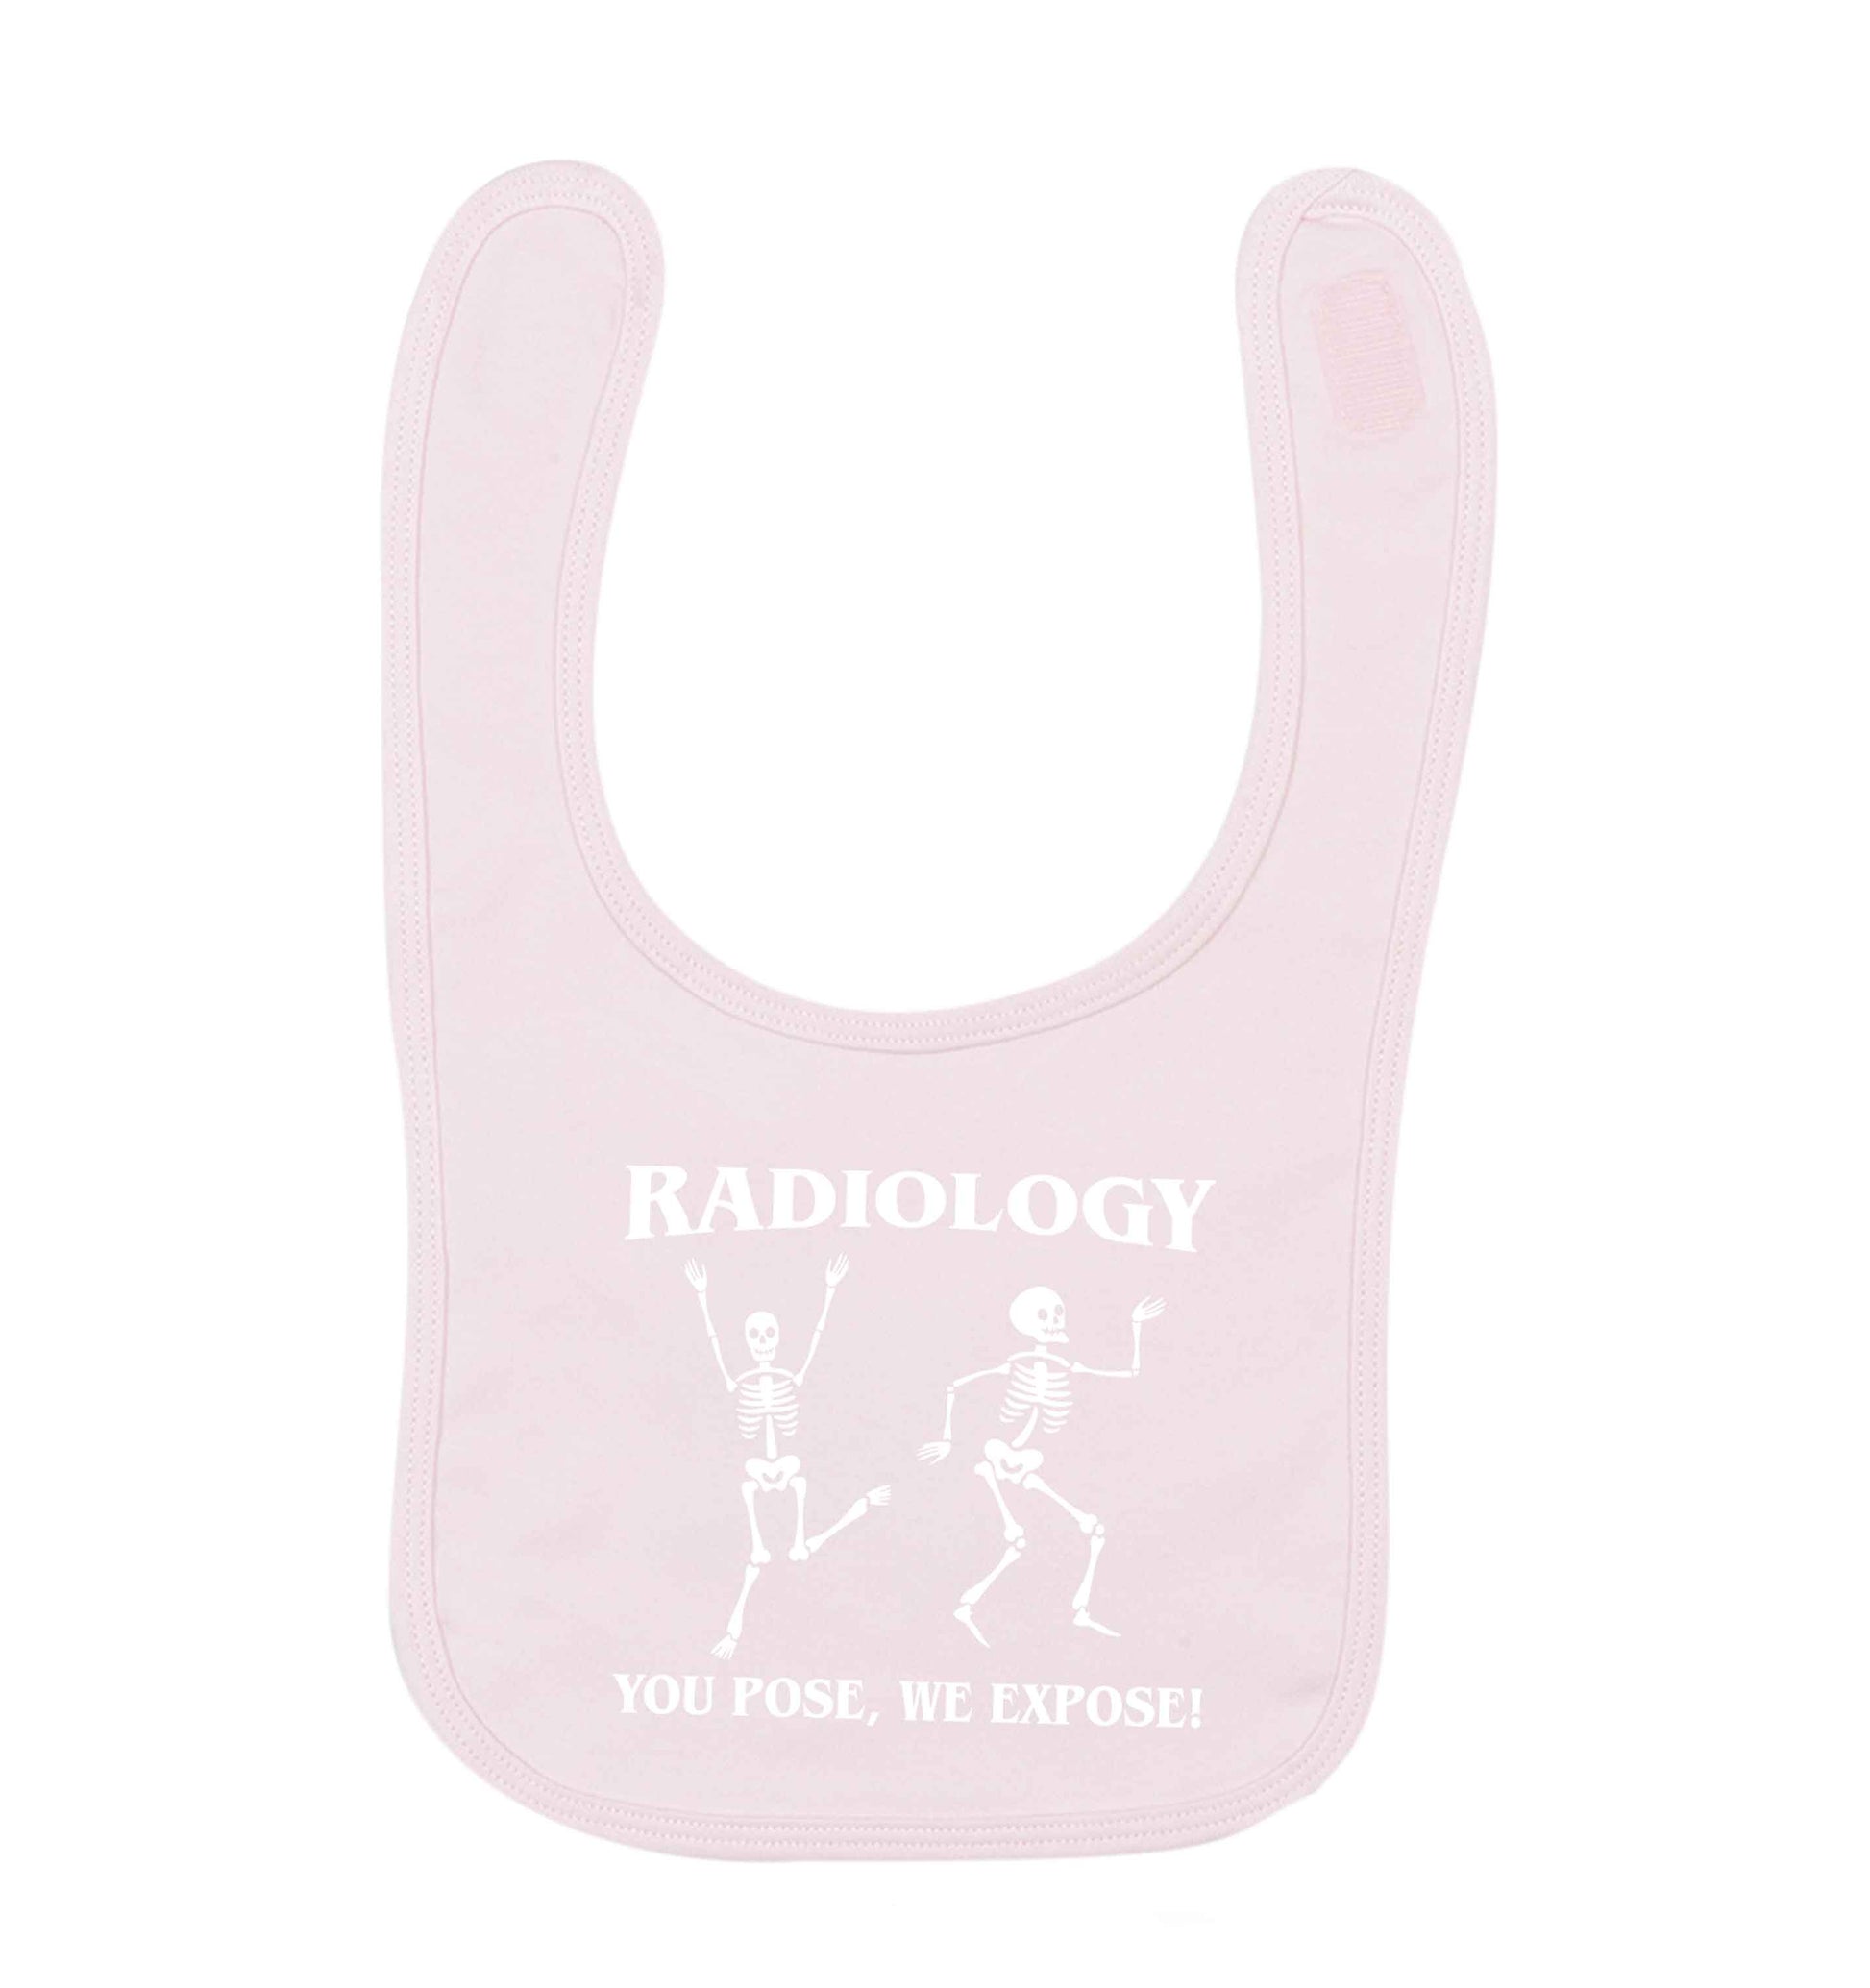 Radiology you pose we expose pale pink baby bib